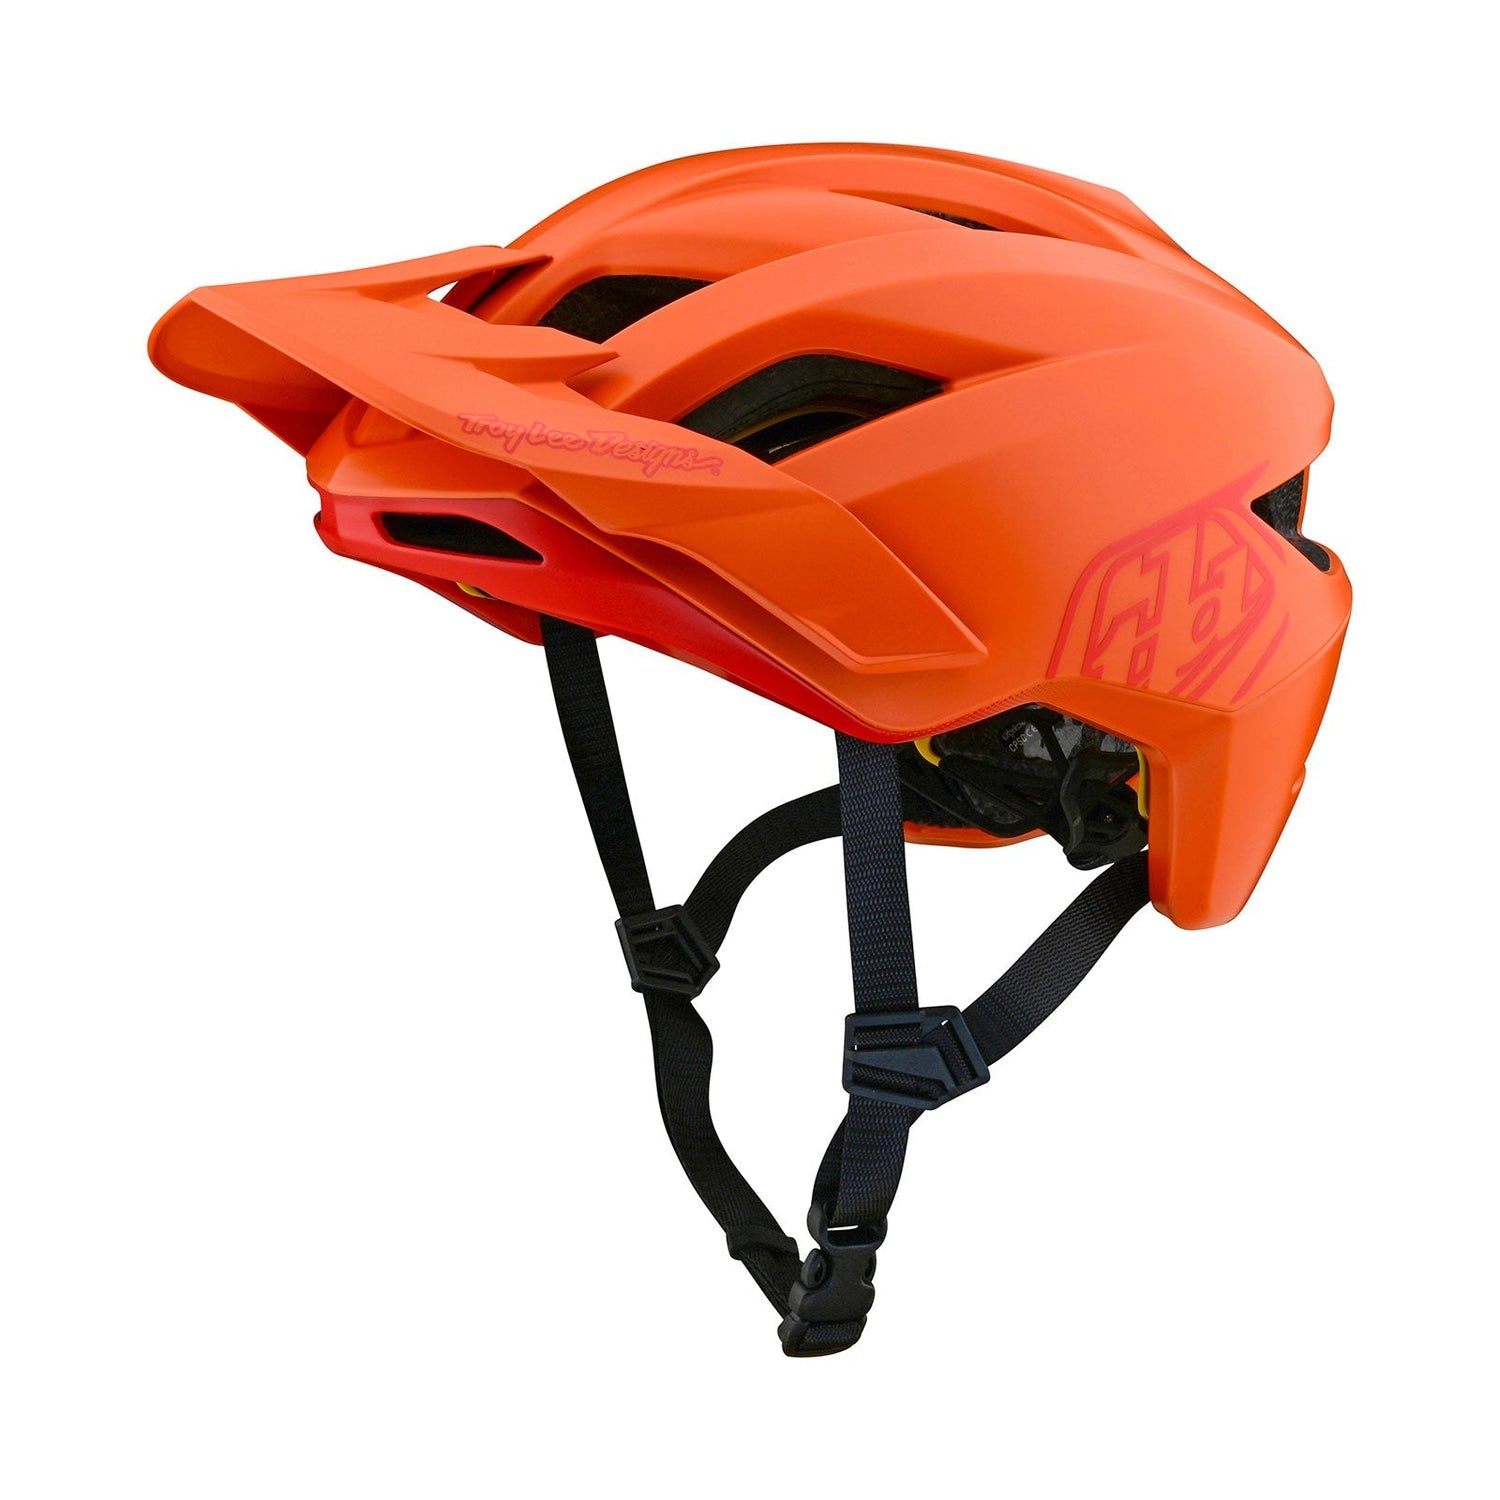 Flowline-Helm mit MIPS Point Mandarin